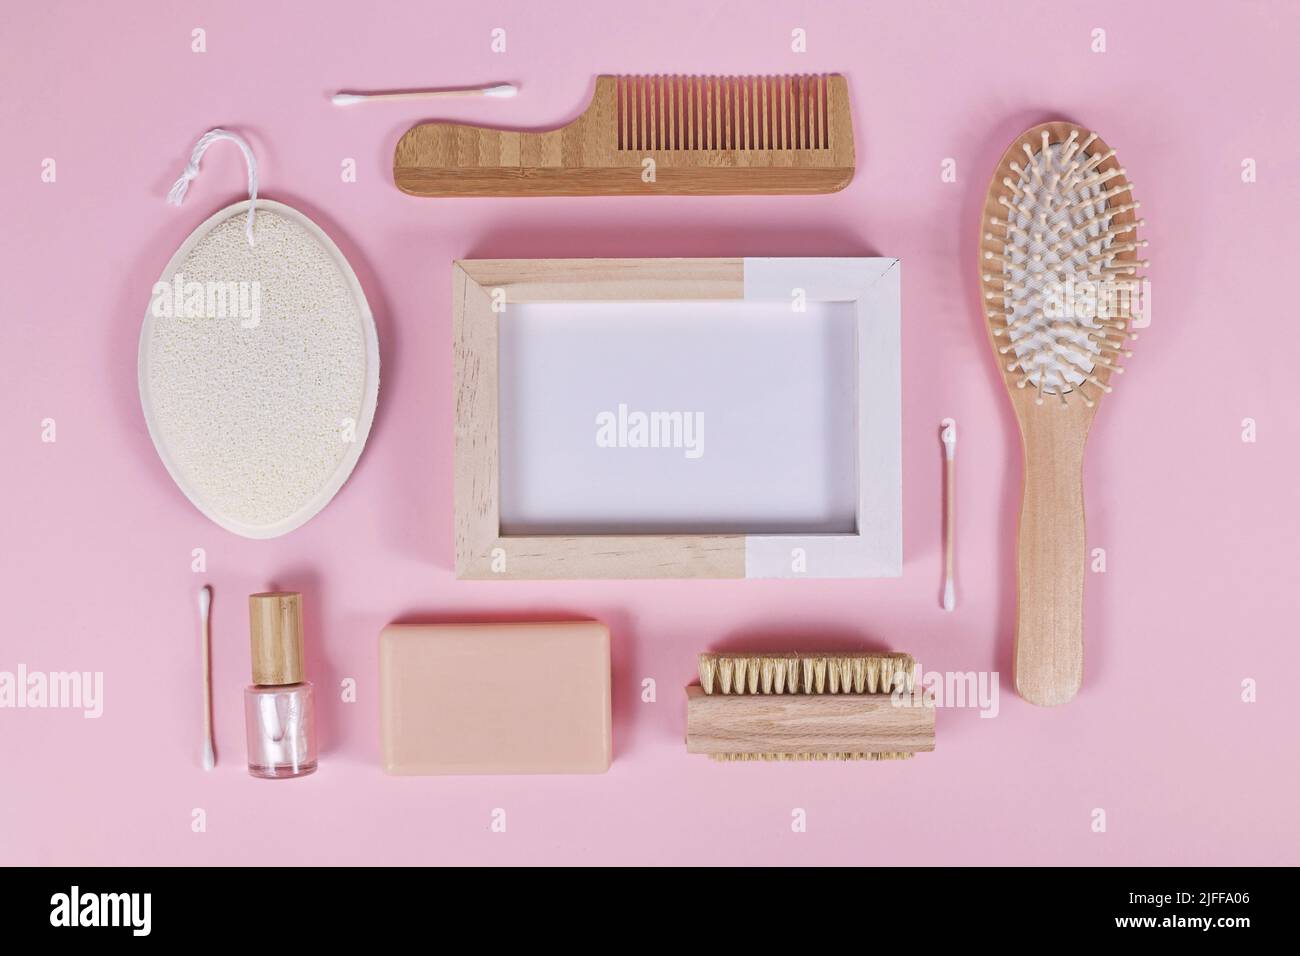 Prodotti ecologici in legno per la bellezza e l'igiene come pettine e sapone disposti su sfondo rosa Foto Stock